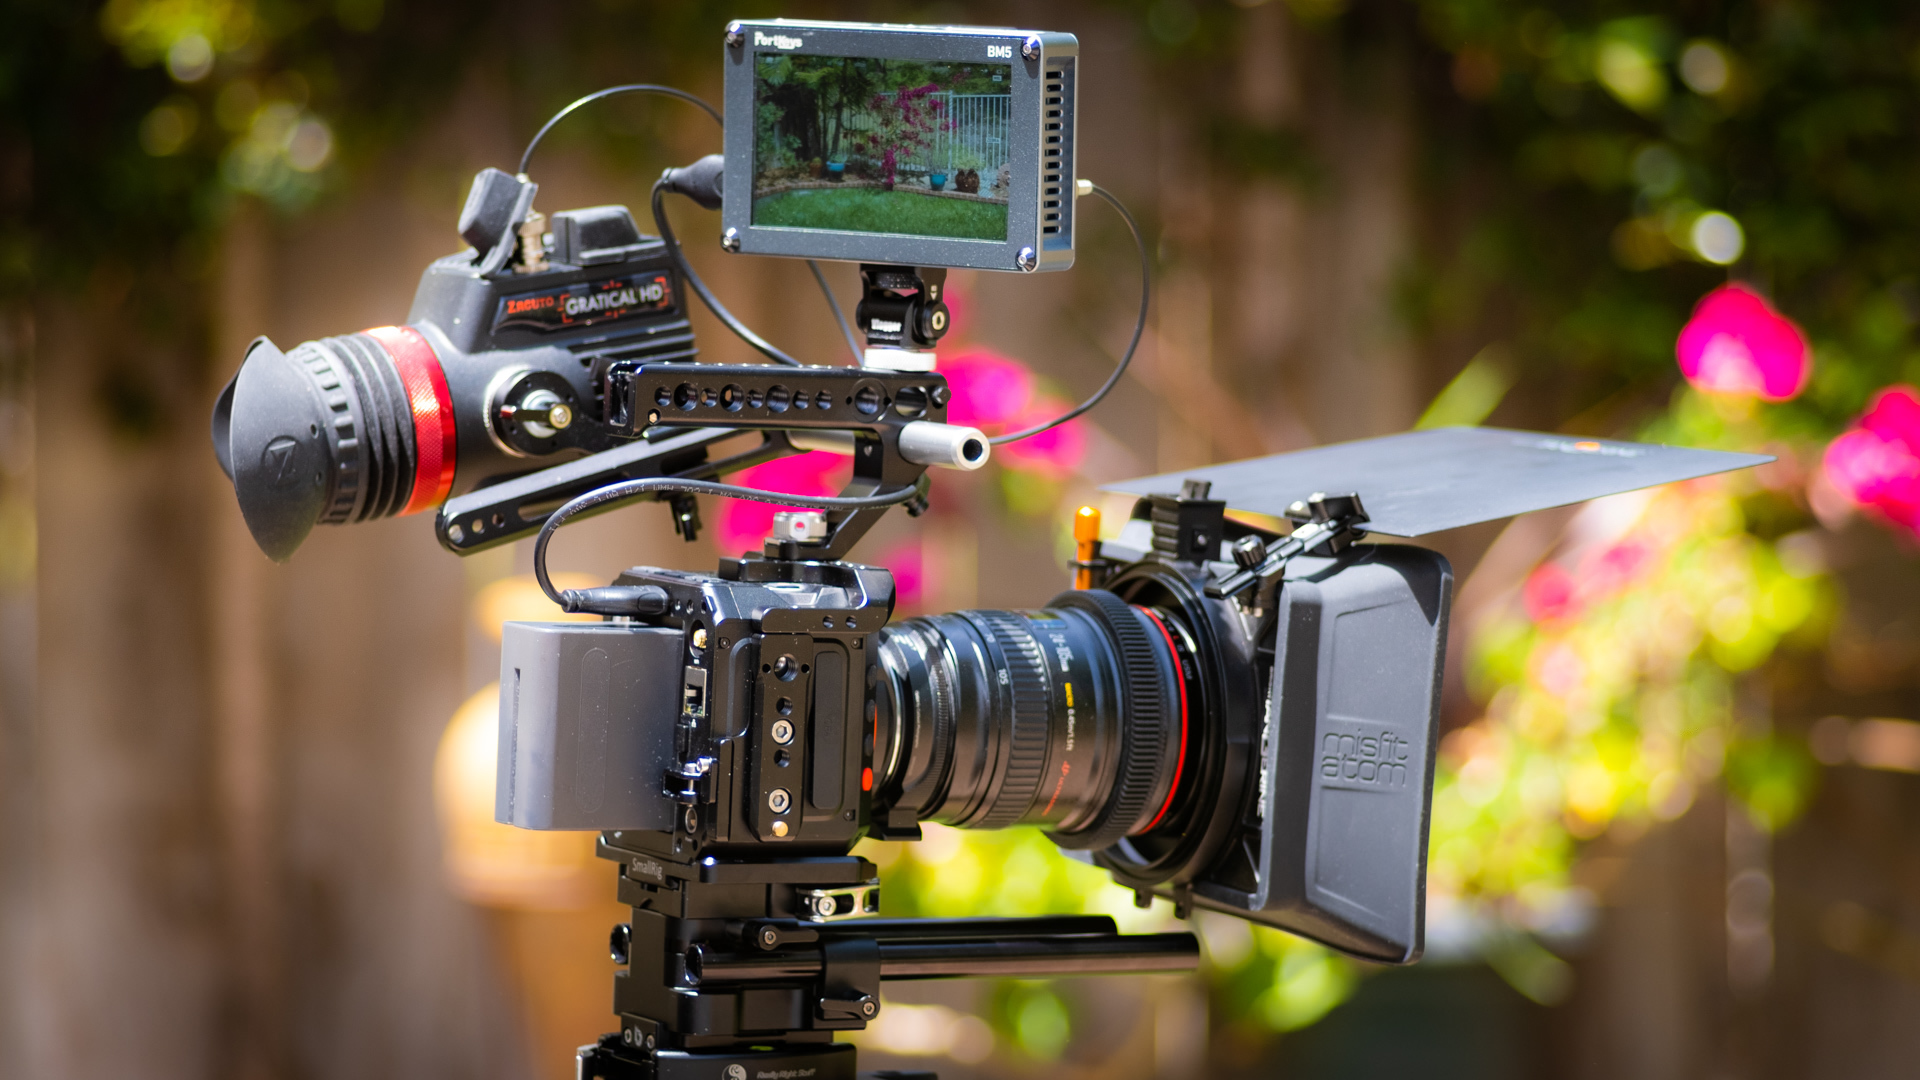 Z CAM公布E2系列产品摄像机v0.94固定件